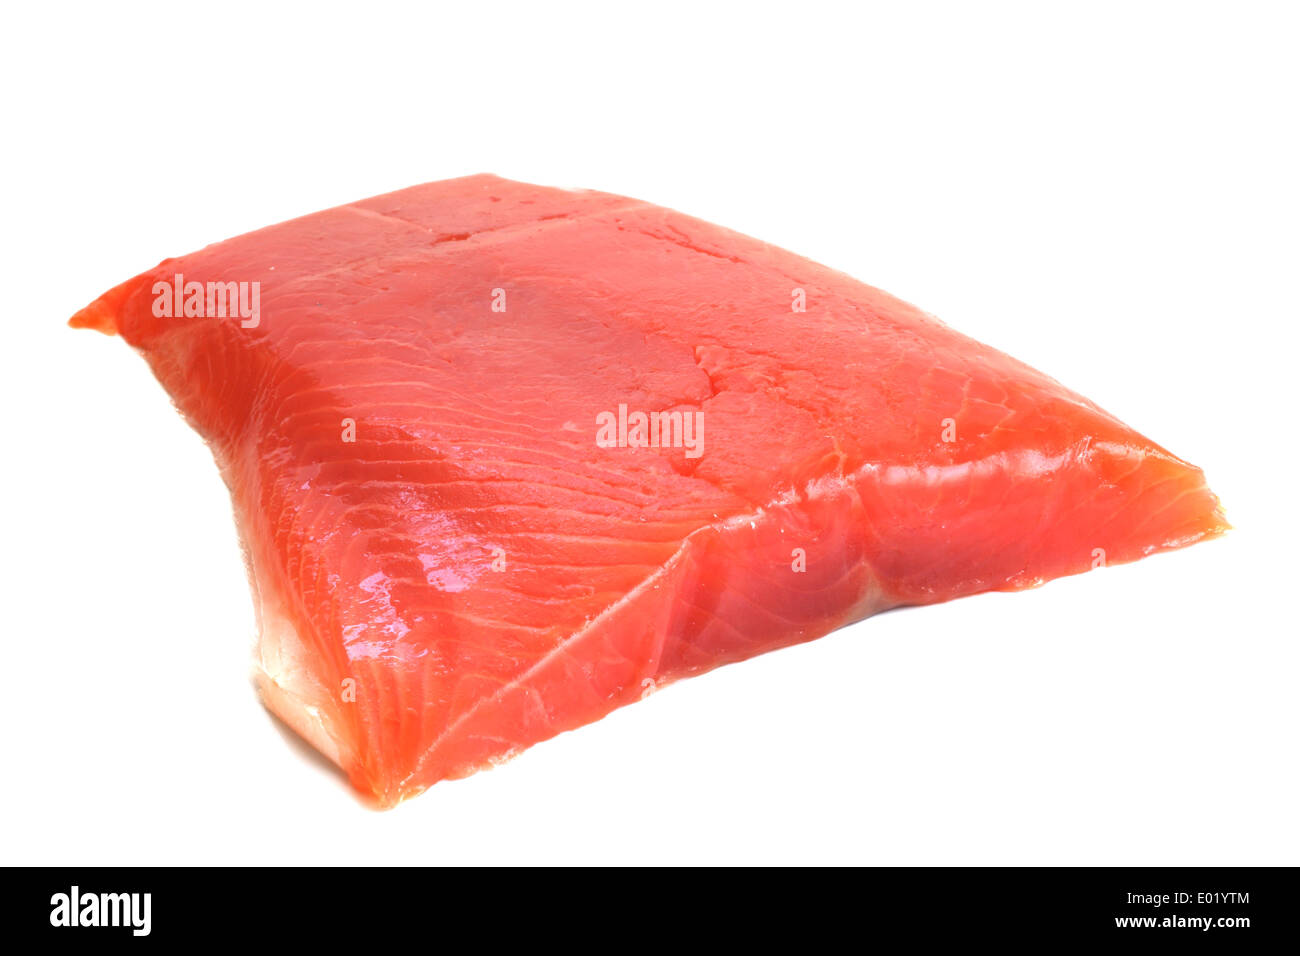 Salmone filetto crudo isolati su sfondo bianco Foto Stock